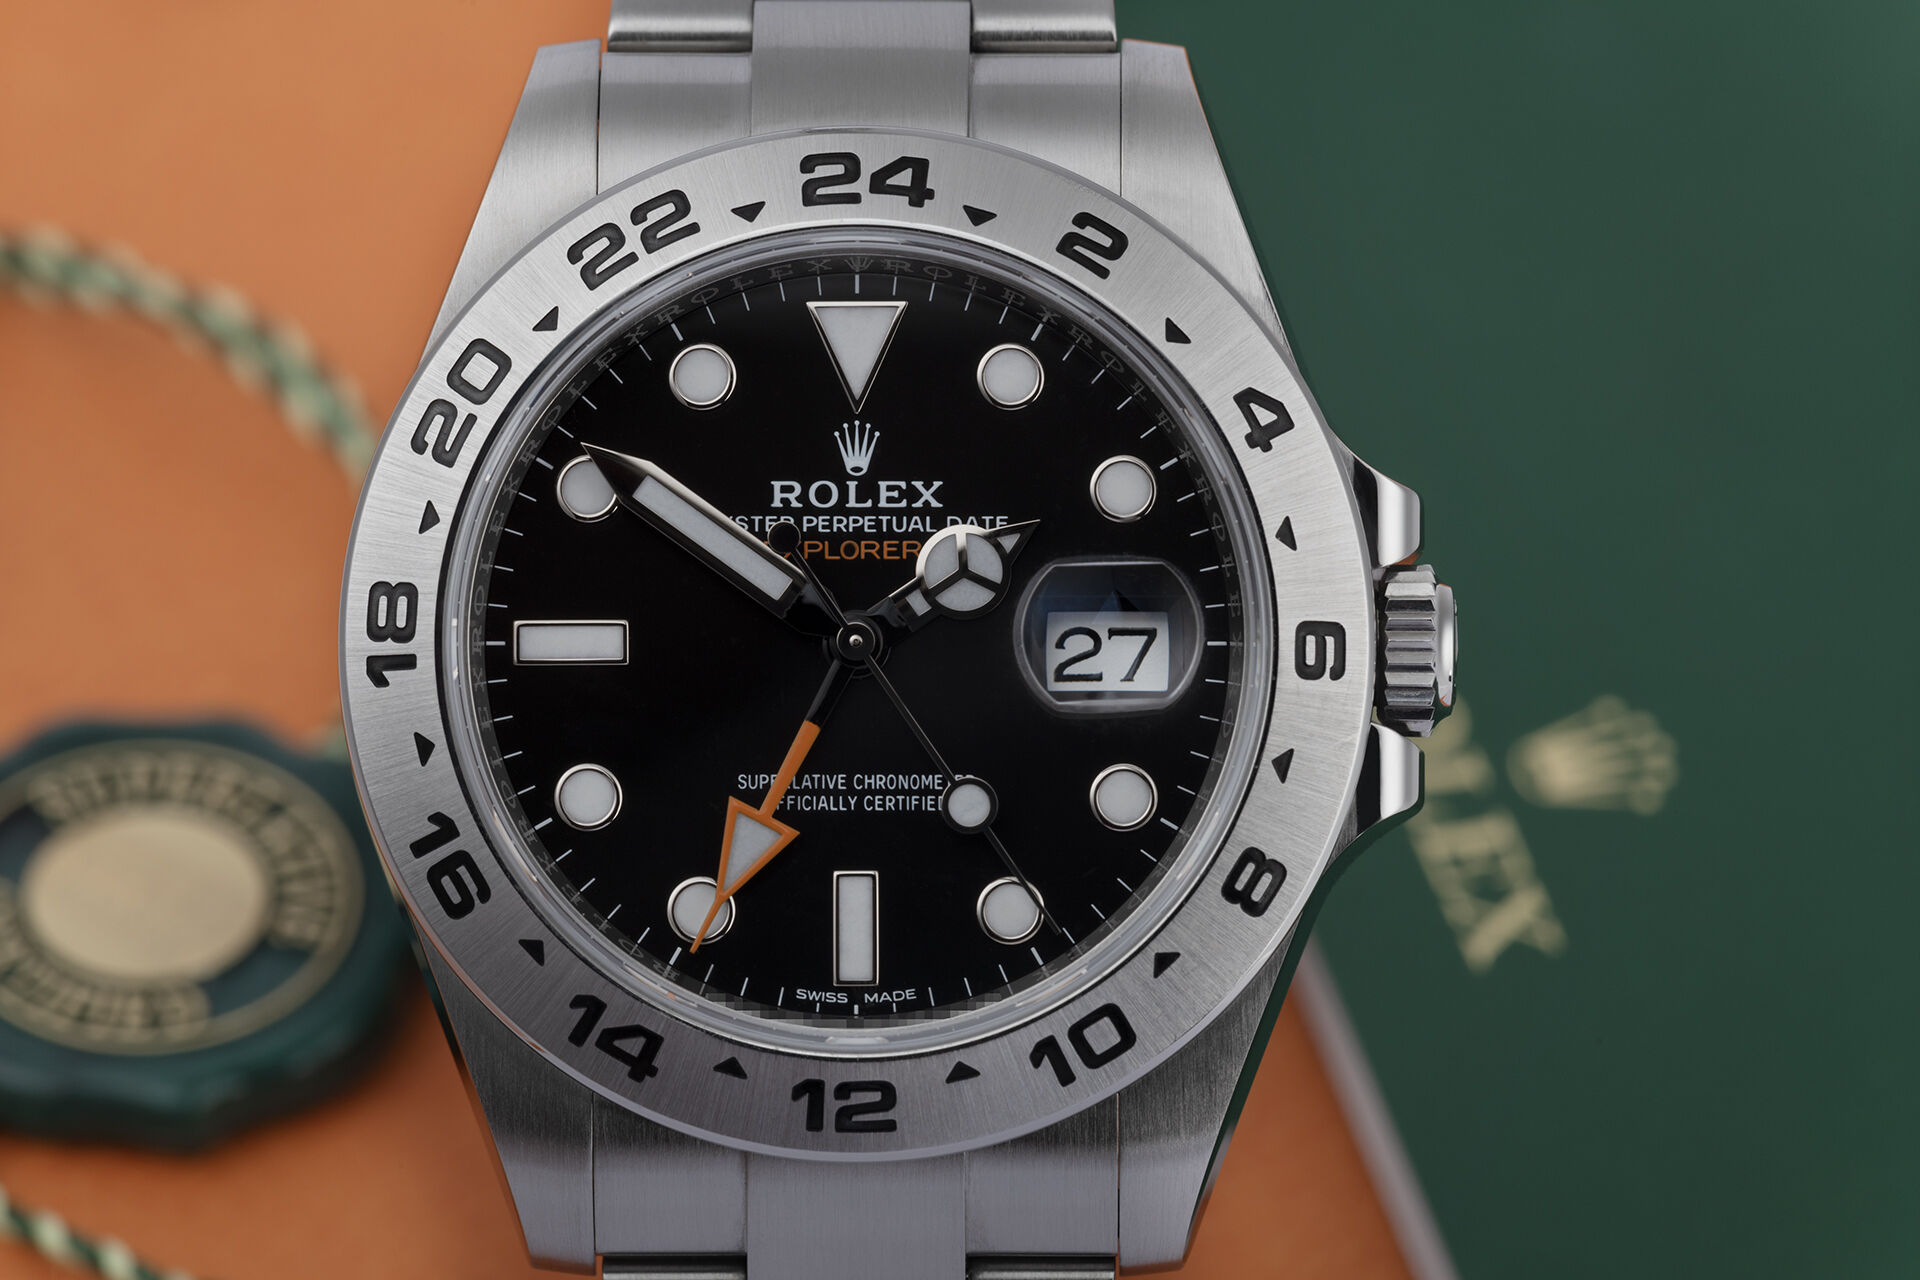 ref 216570 | Box & Certificate  | Rolex Explorer II